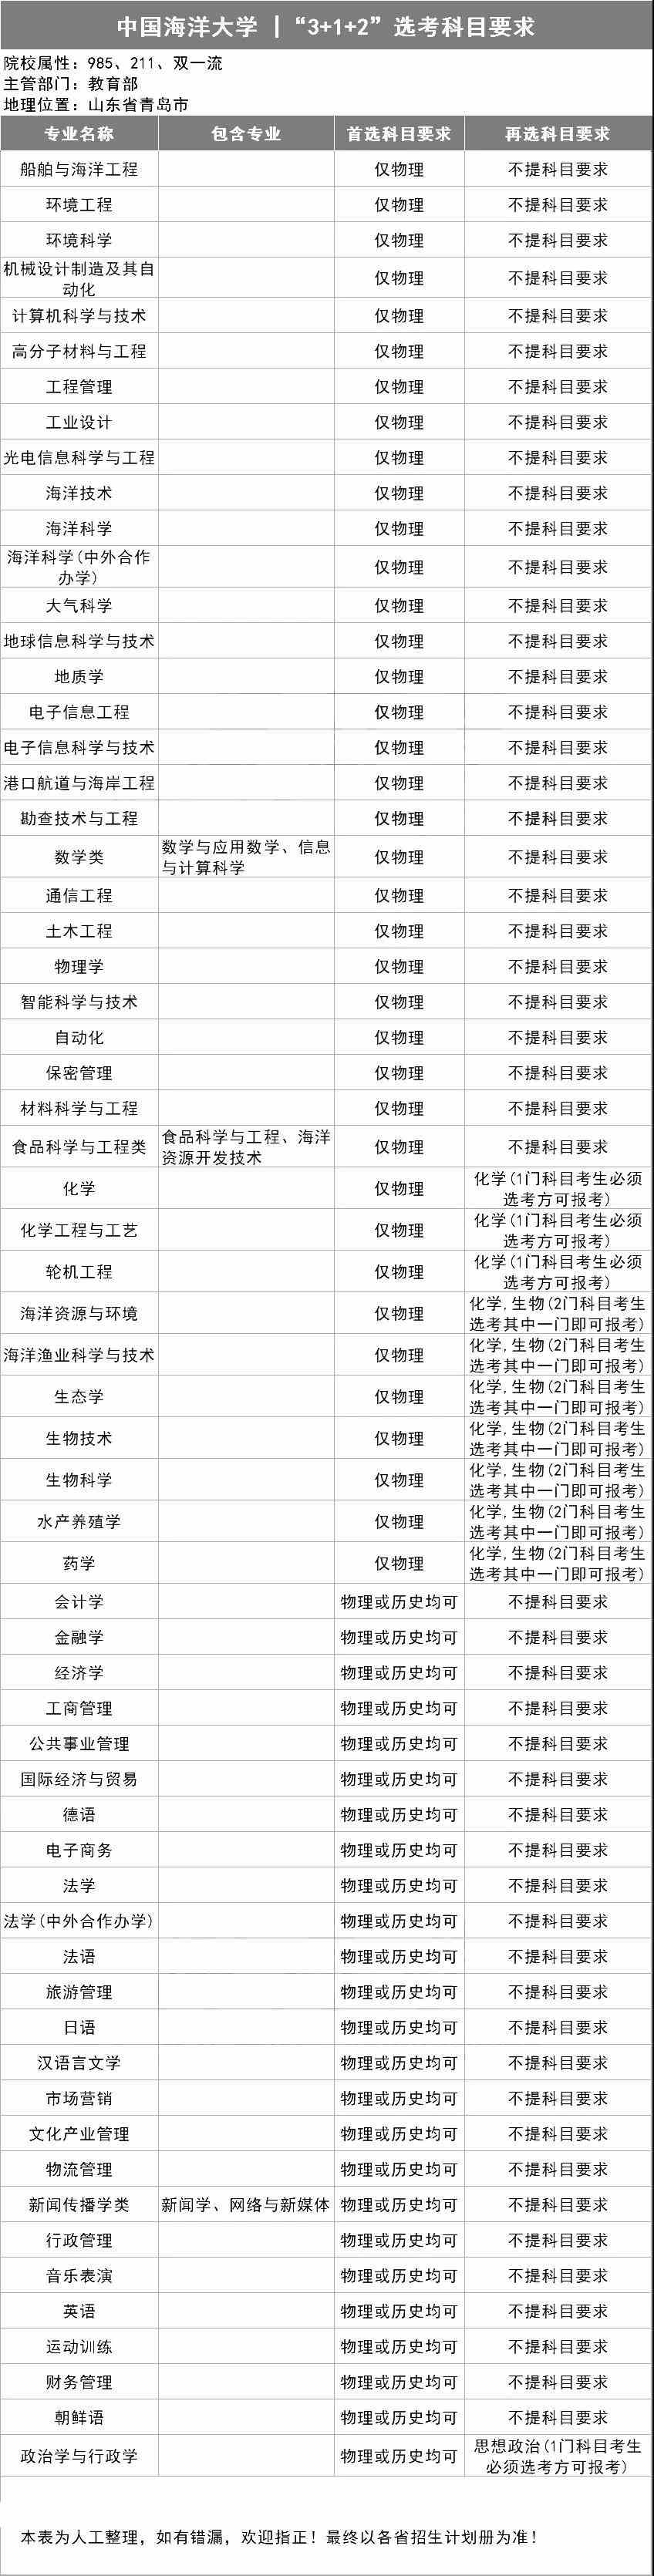 中国海洋大学“3+1+2”选考科目要求